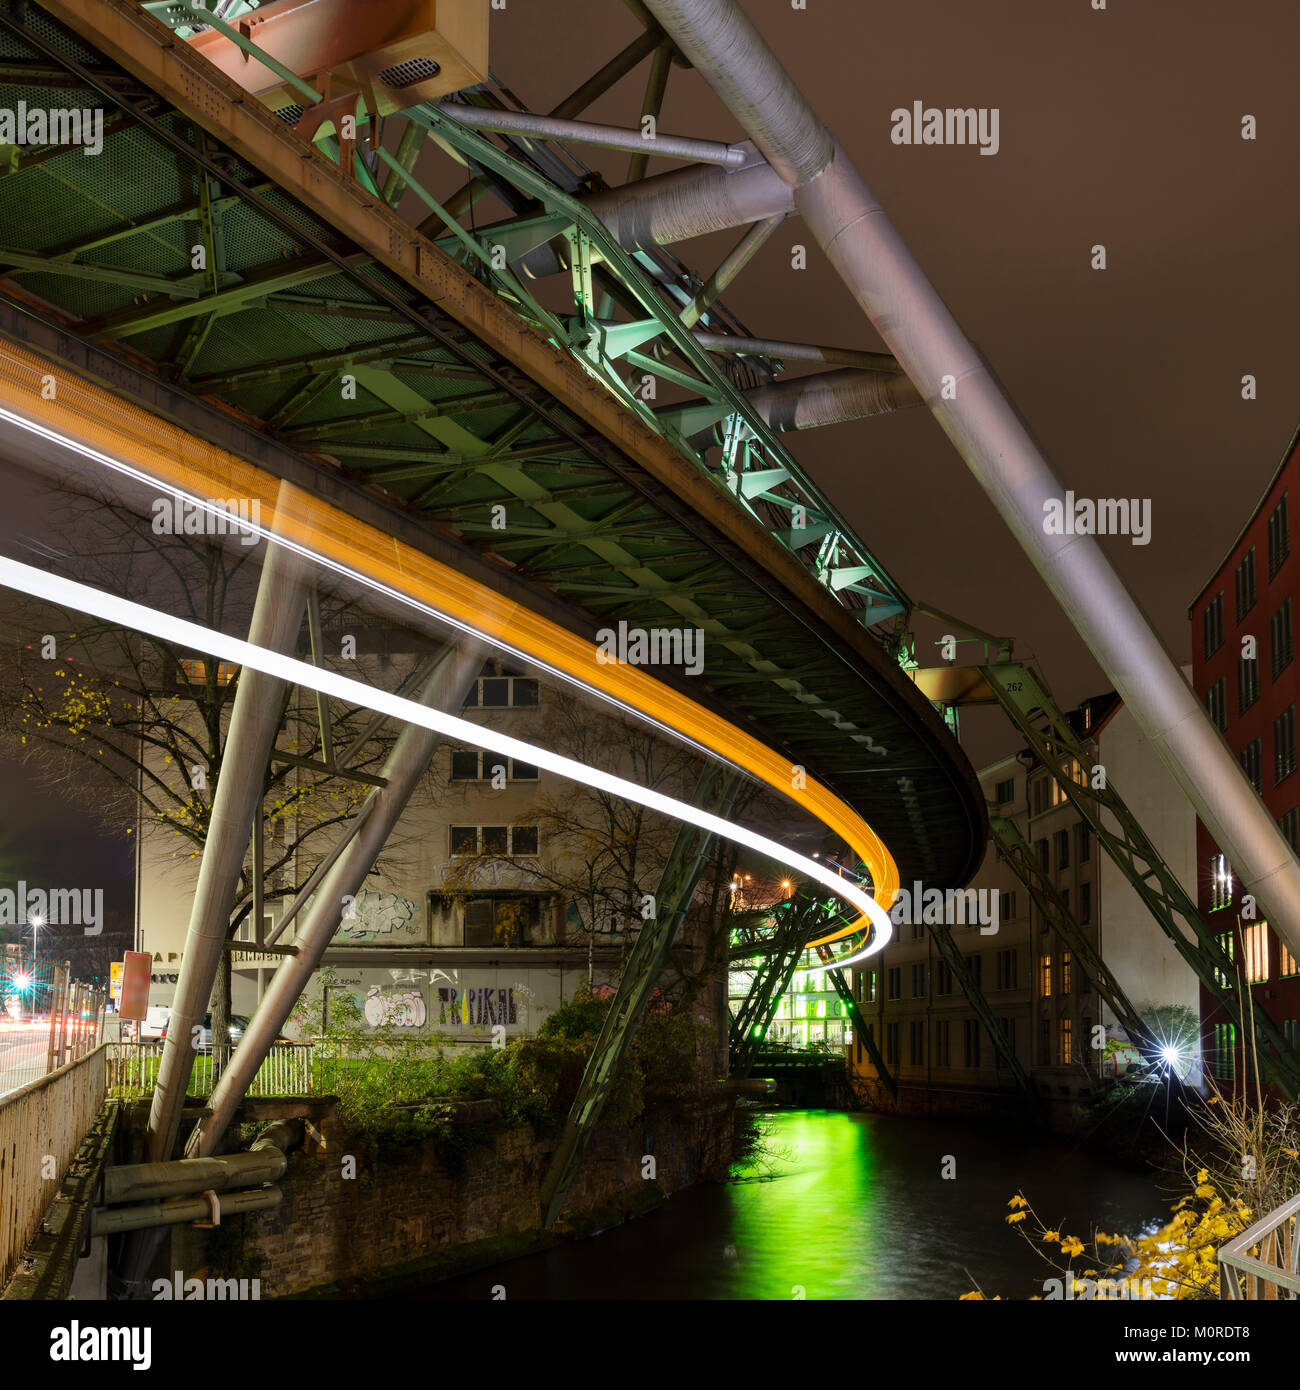 Germania, Wuppertal, illuminate linee aeree ferroviarie, la struttura di supporto, sentieri di luce Foto Stock